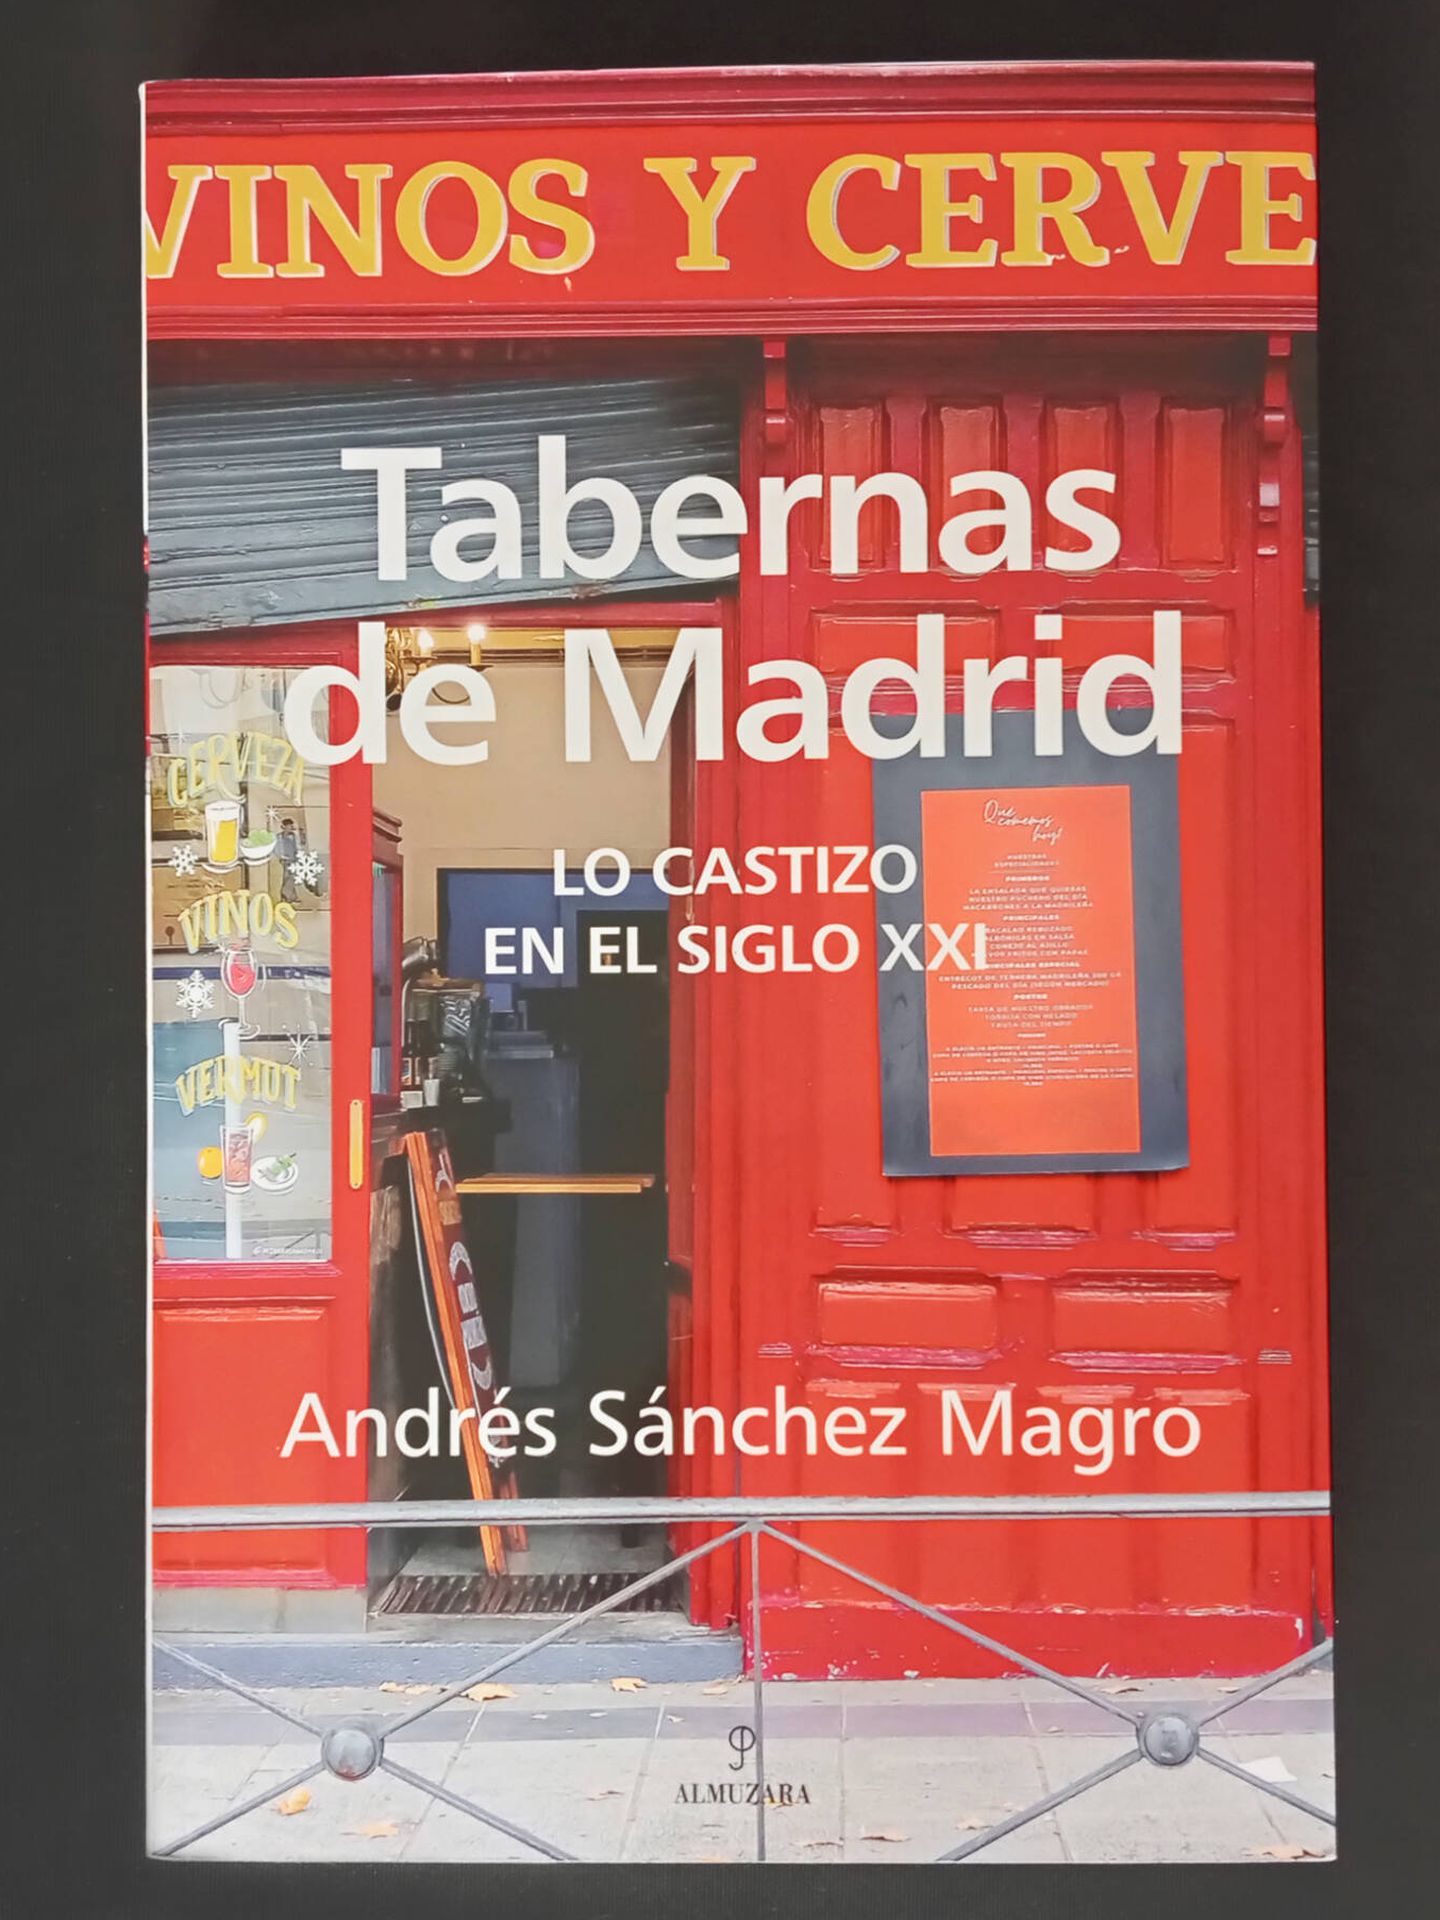 El libro “Tabernas de Madrid”, de Andrés Sánchez Magro, hace un repaso por algunas de las tabernas clásicas y contemporáneas de Madrid. (Rafael Ansón)